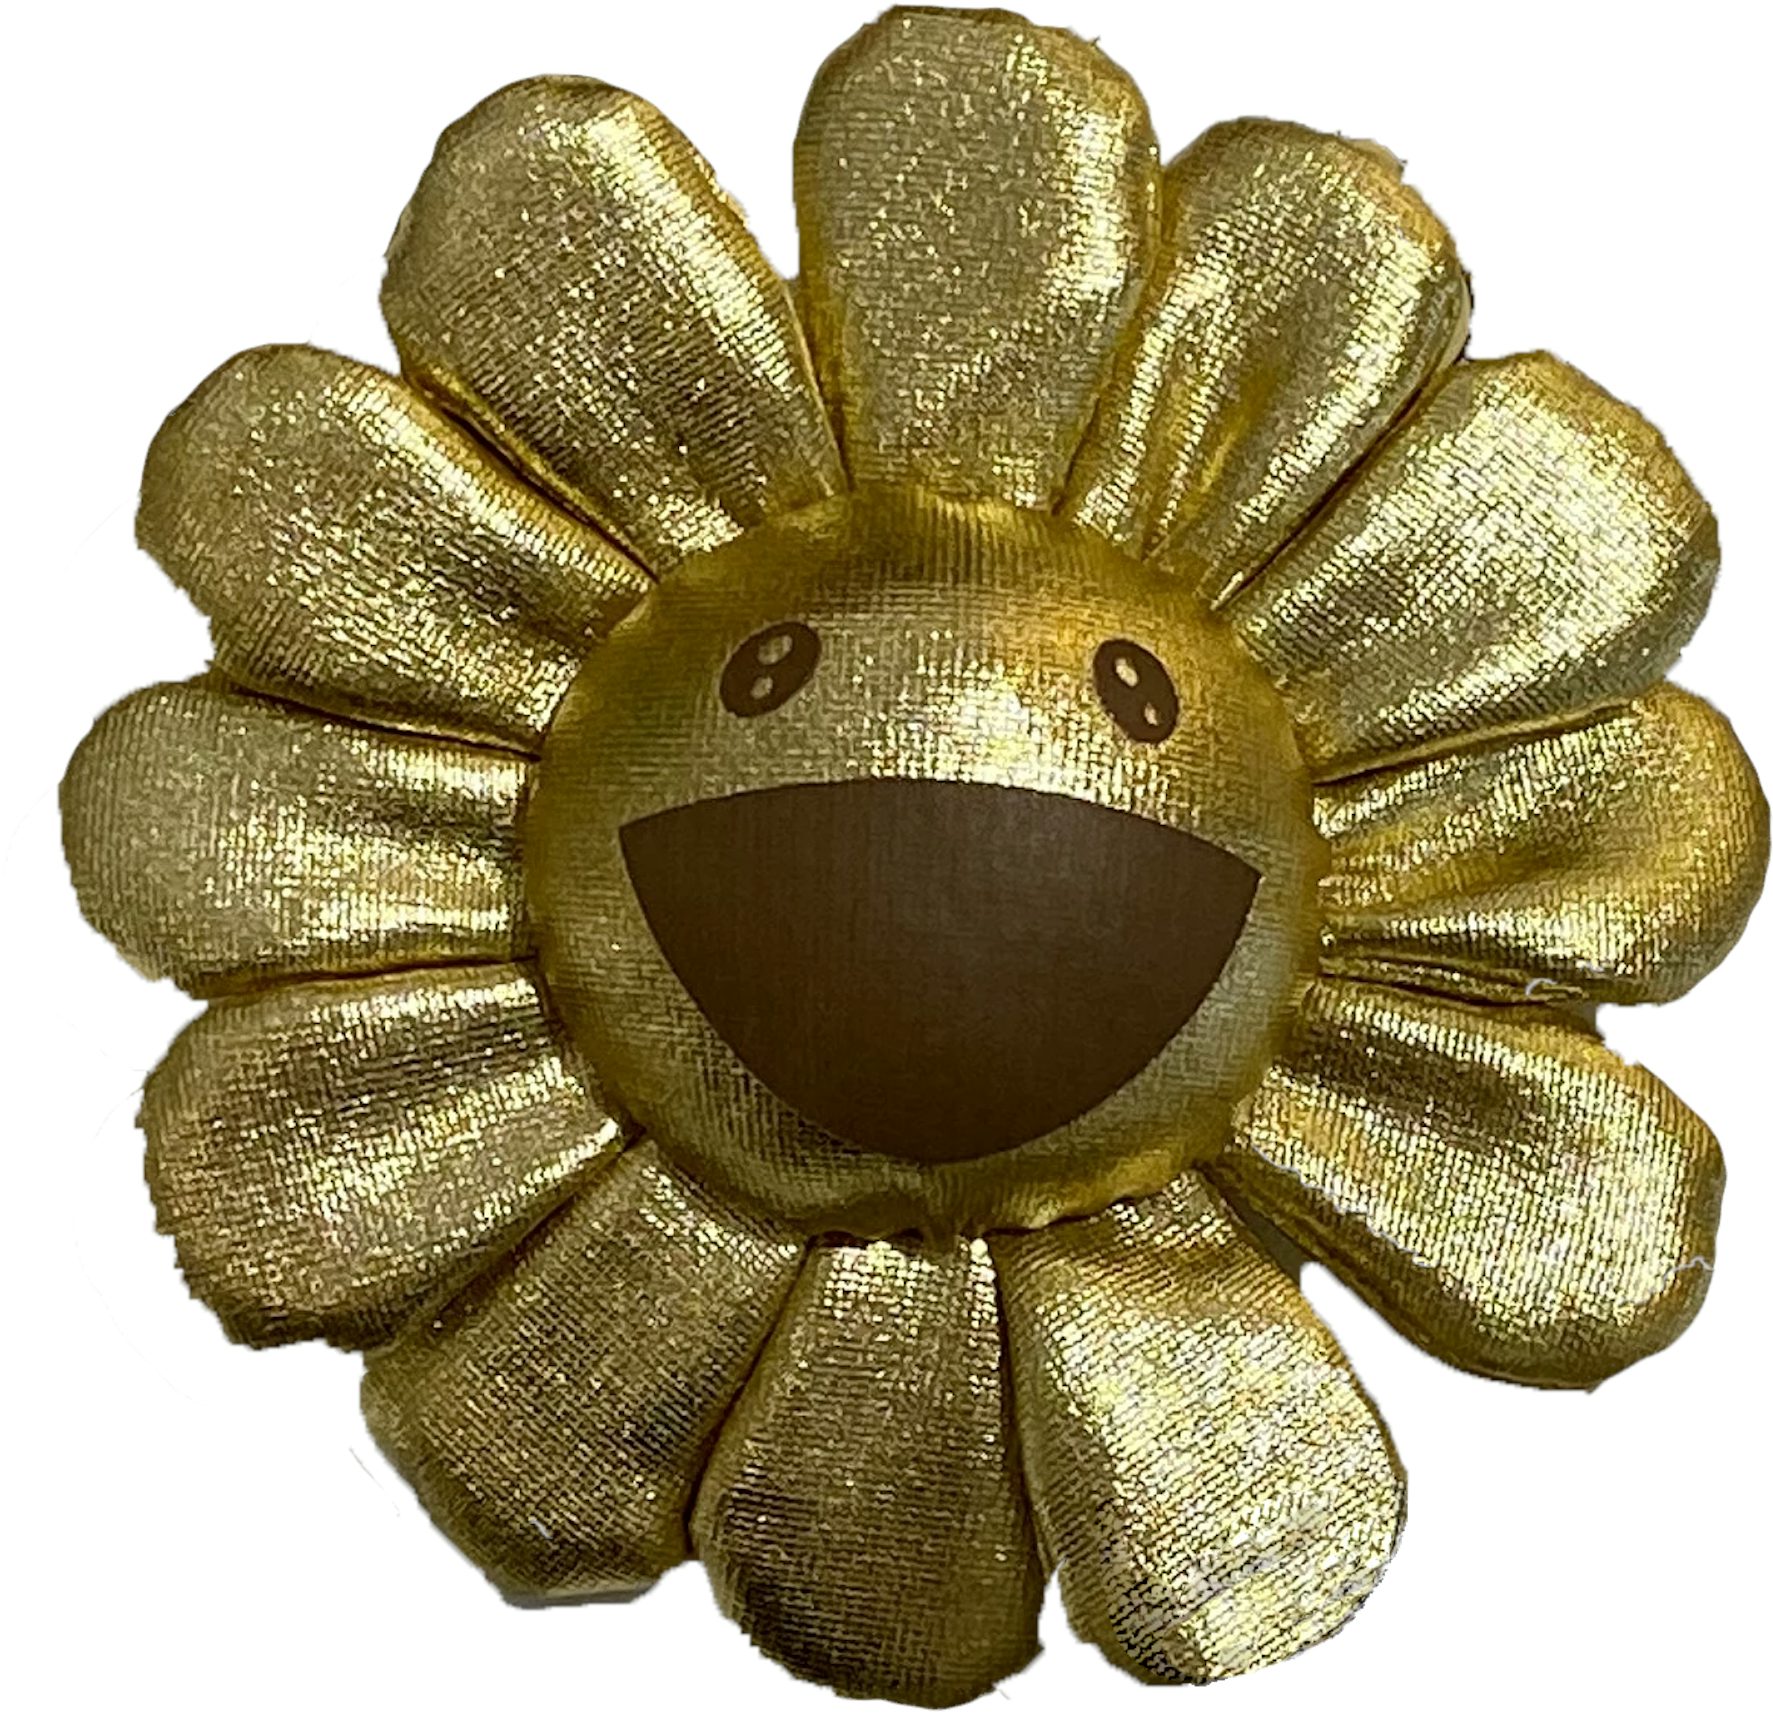 Takashi Murakami, Takashi Murakami sunflower (2019), Available for Sale